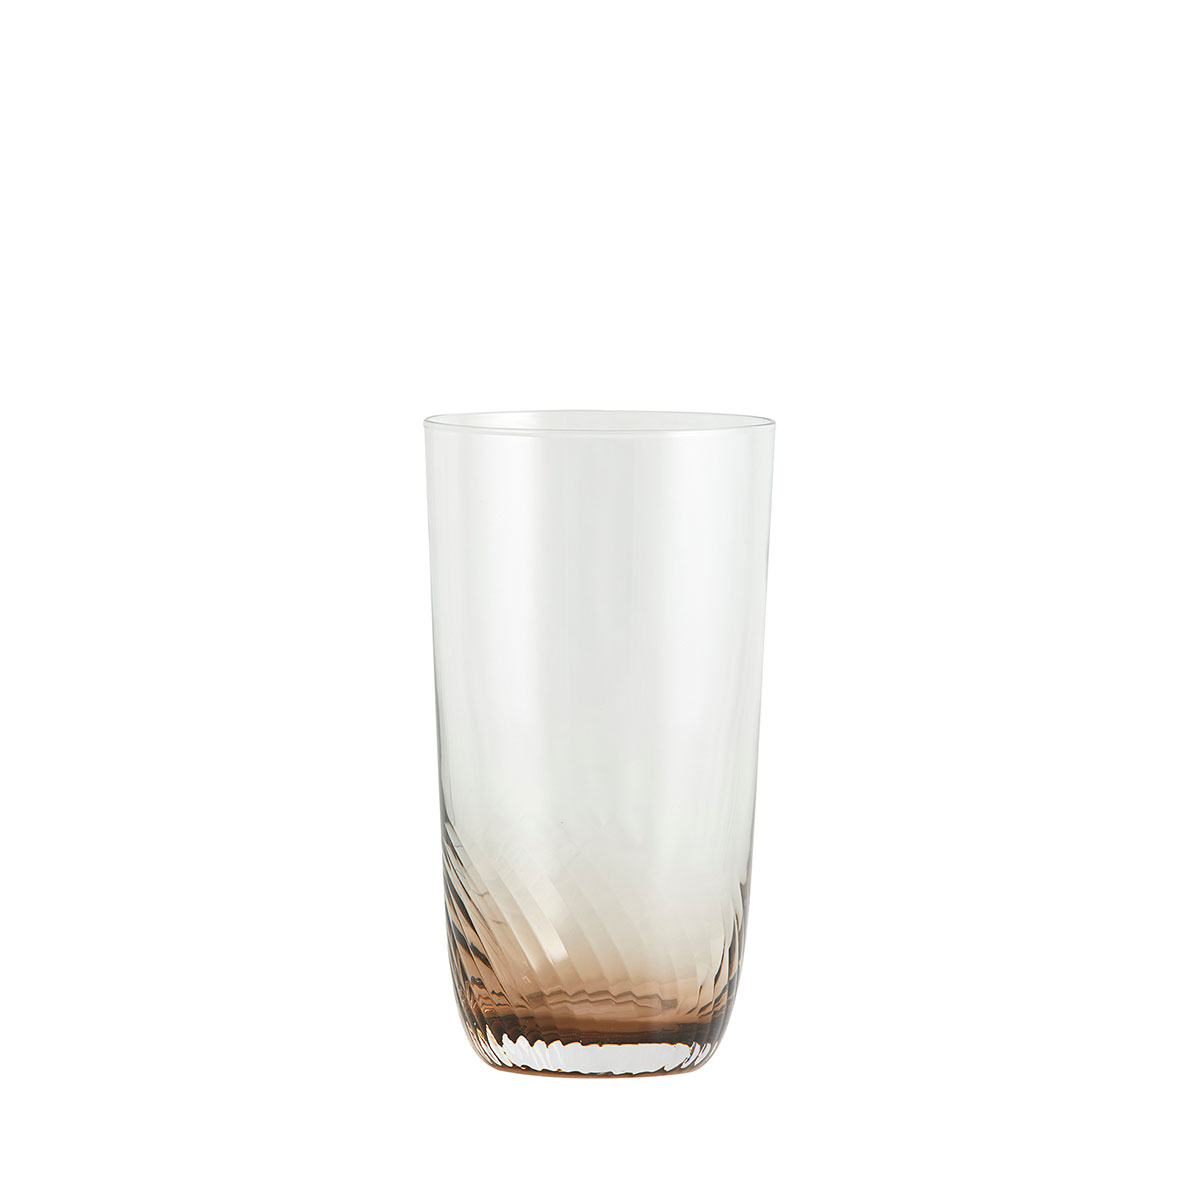 Høyt drikkeglass i klart og brunt glass